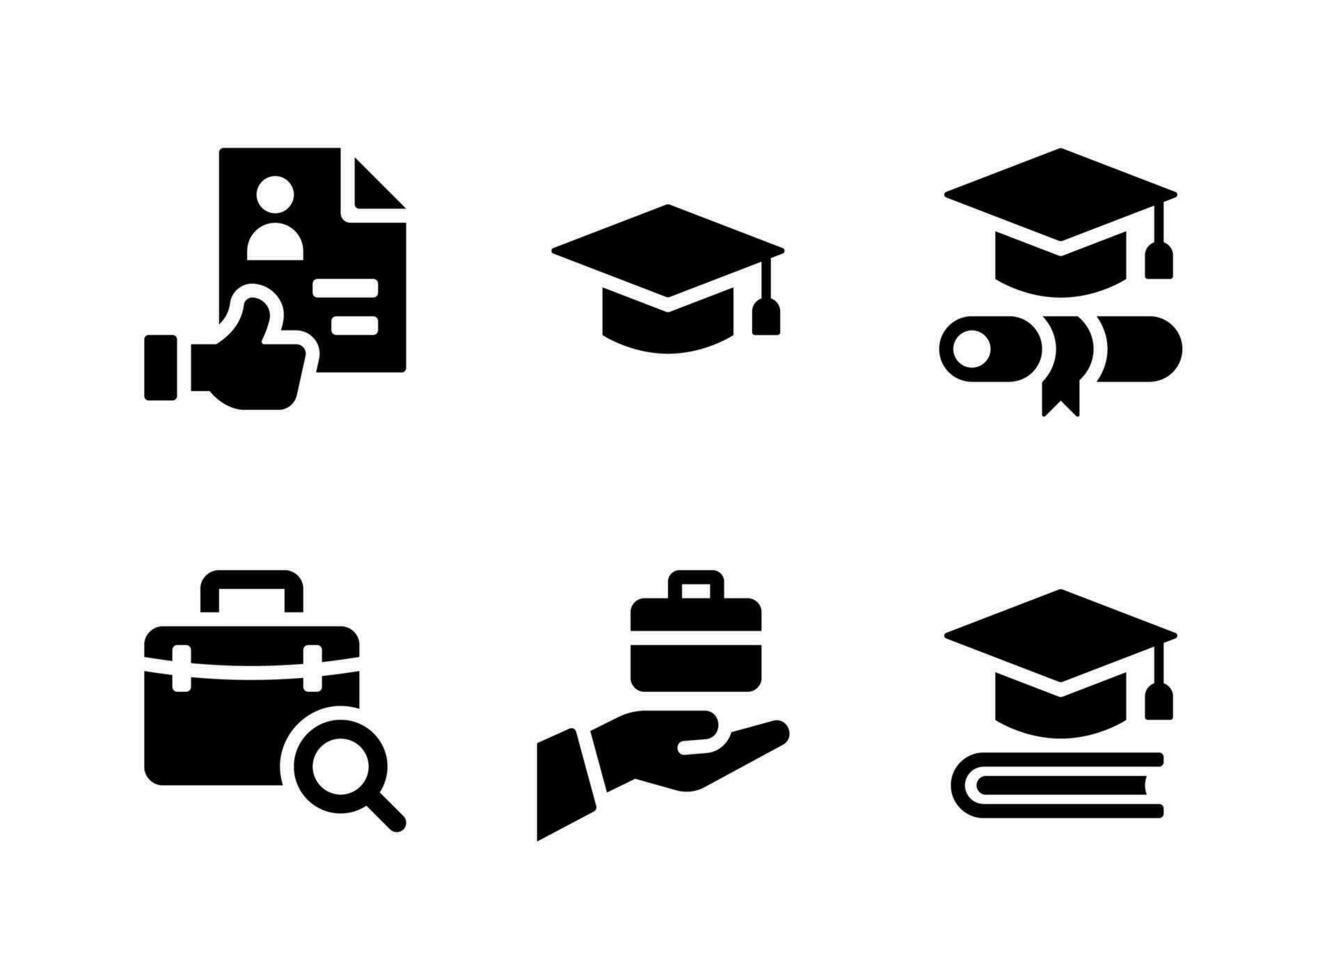 ensemble simple d'icônes solides vectorielles liées à l'obtention du diplôme. contient des icônes comme excellent CV, mortier, diplôme et plus encore. vecteur